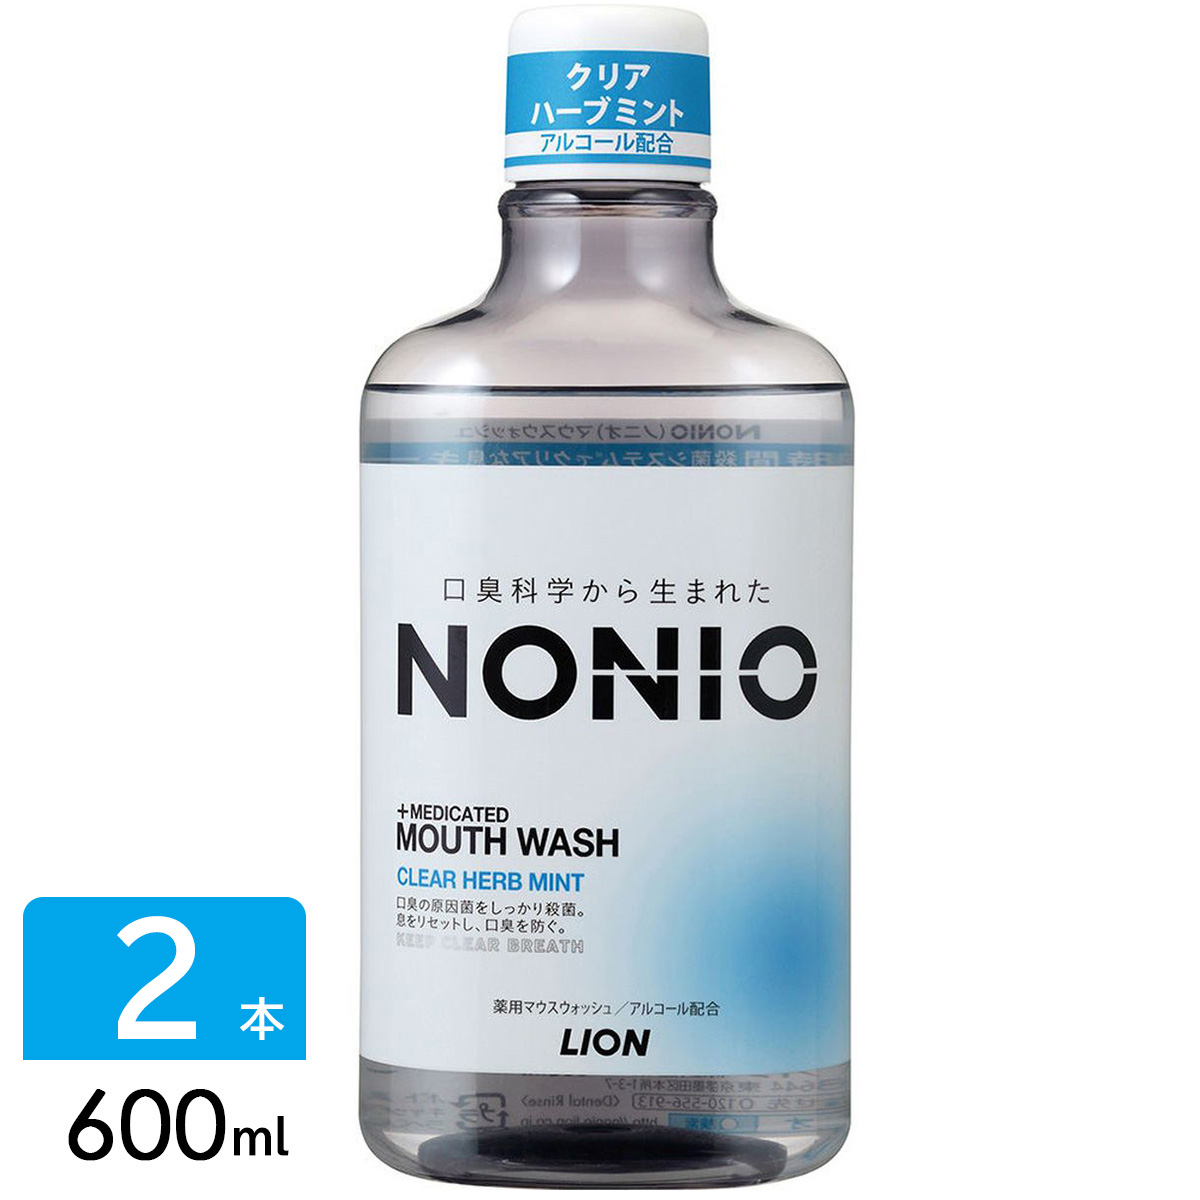 NONIO ノニオ マウスウォッシュ 洗口液 アルコール クリアハーブミント 600ml 2本